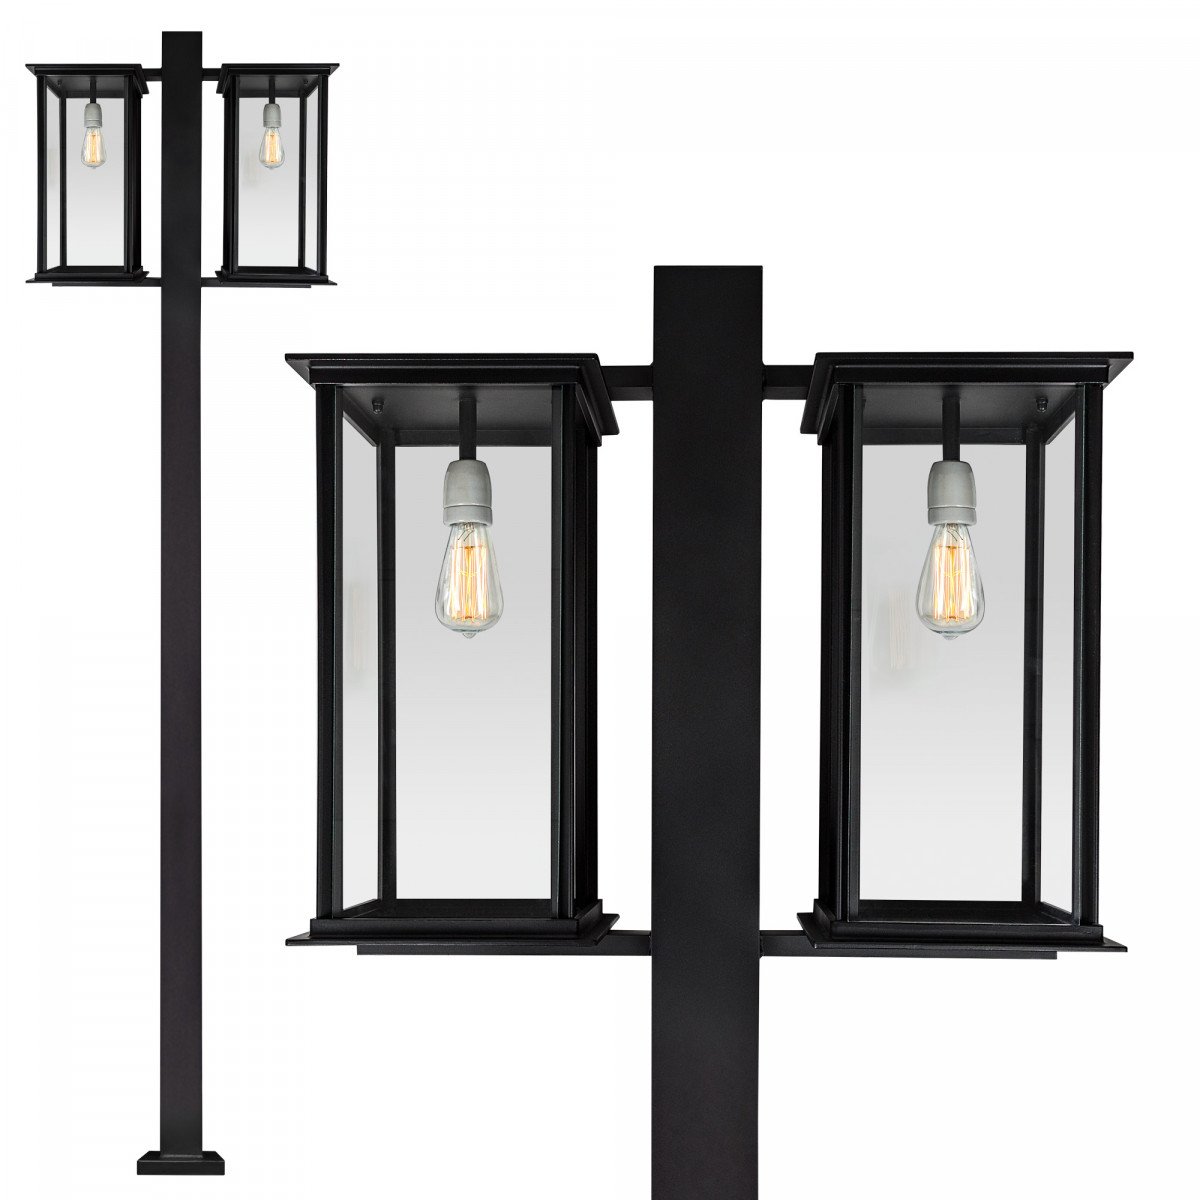 Tuinlamp Capital lantaarn 2 lichts van KS Verlichting exclusieve tuinverlichting